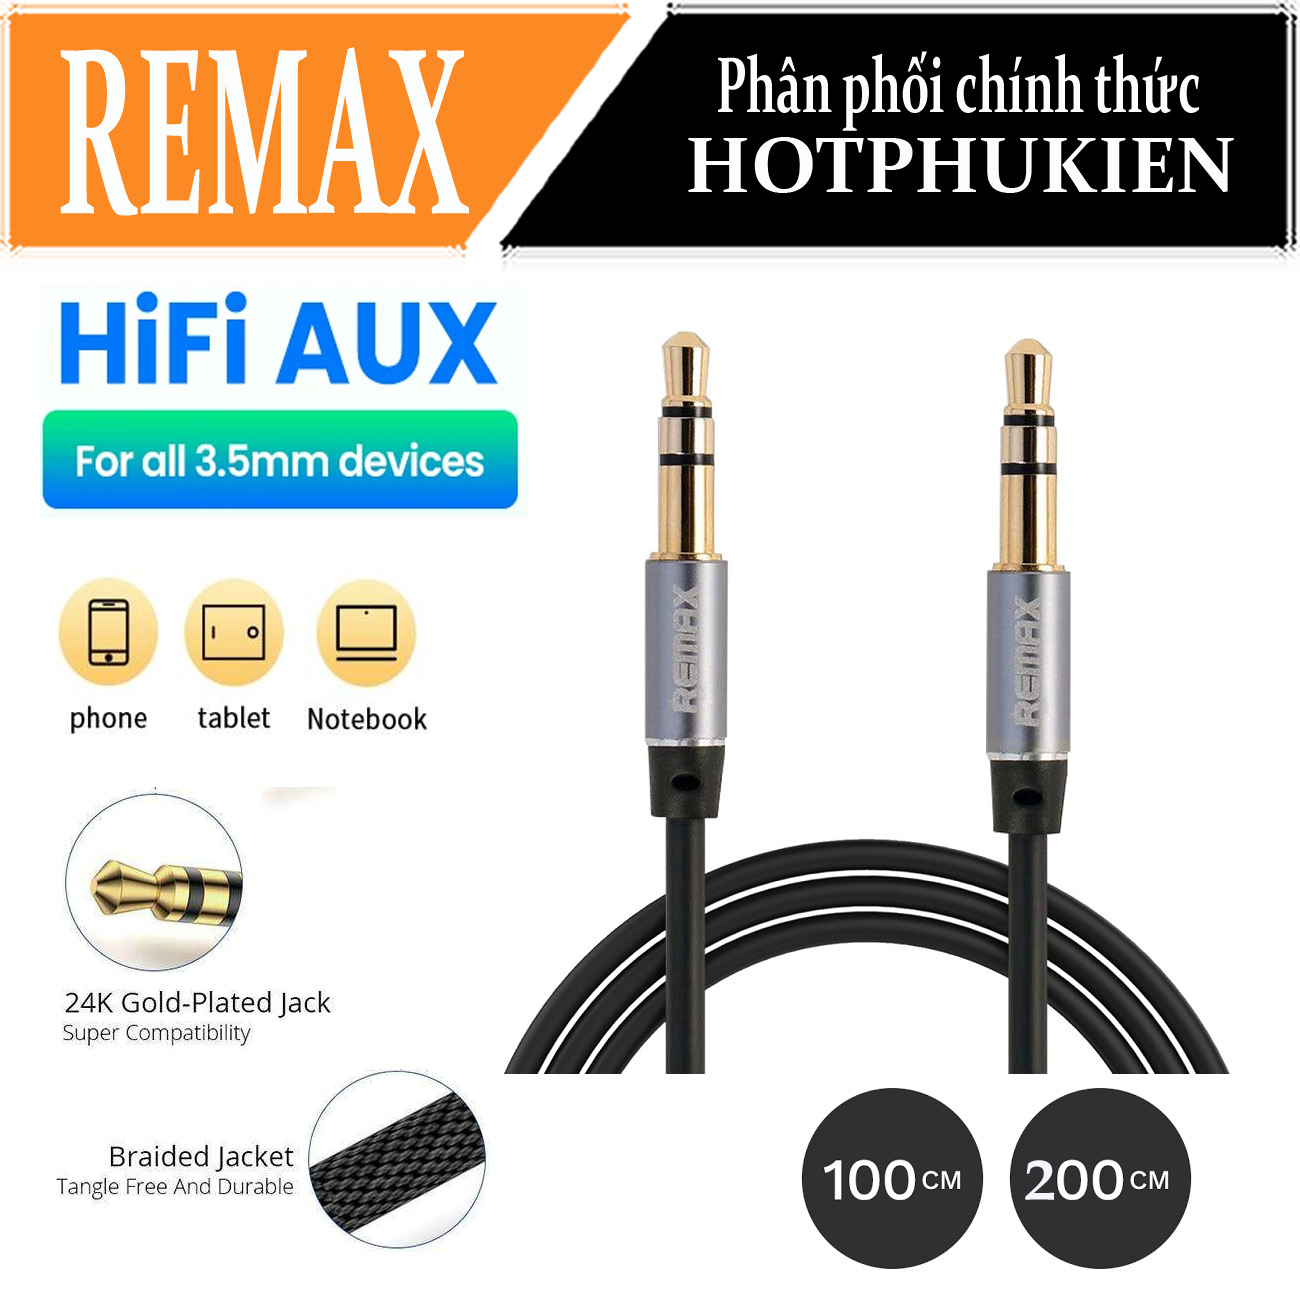 (100 cm)Dây cáp âm thanh Hifi AUX 3.5mm Audio hiệu Remax RL-L100 truyền tải âm thanh chất lượng cao đầu cáp mạ vàng, công nghệ chống đứt gãy (giao màu ngẫu nhiên) (bảo hành 3 tháng 1 đổi 1)